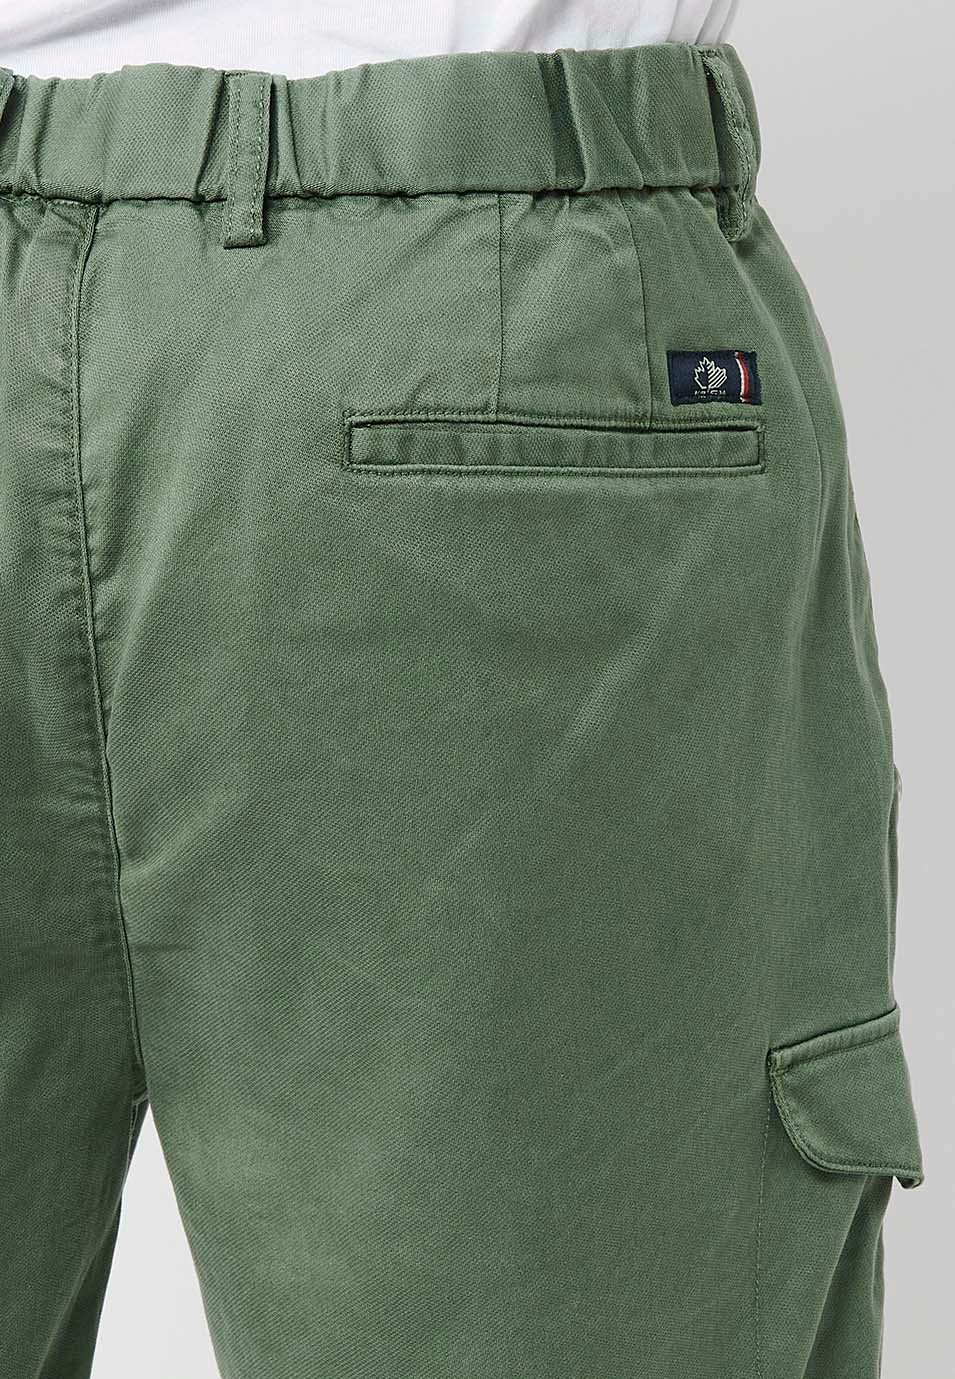 Pantalons curts amb Cintura engomada i tancament amb cremallera i botó amb Butxaques, dos laterals amb solapa de Color Verd per a Home 7